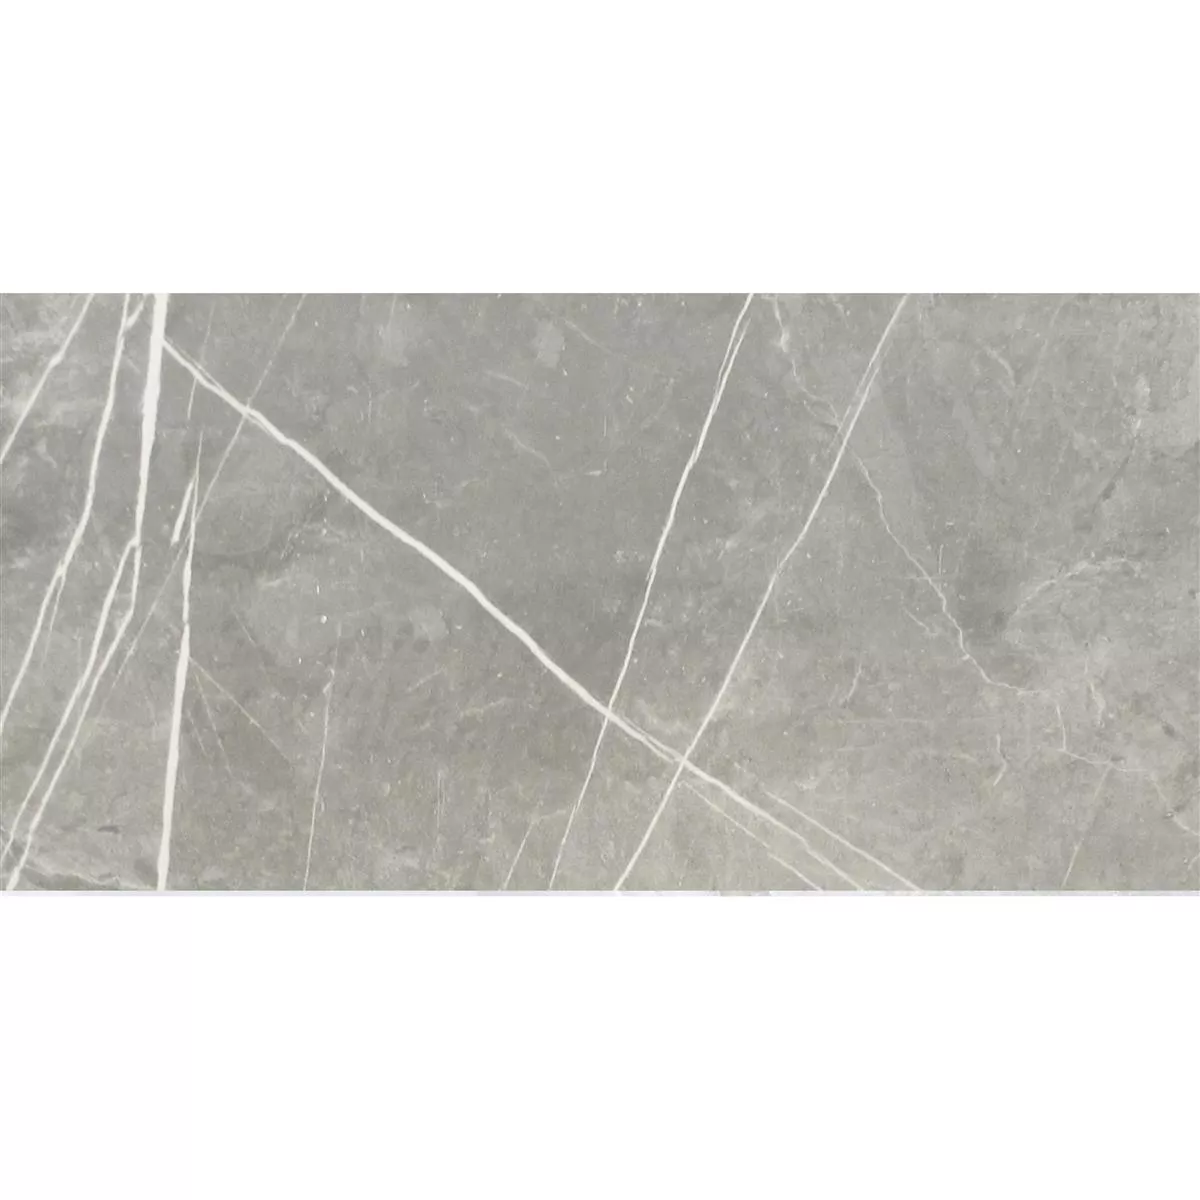 Muster Bodenfliesen Astara Natursteinoptik Poliert Lux 30x60cm